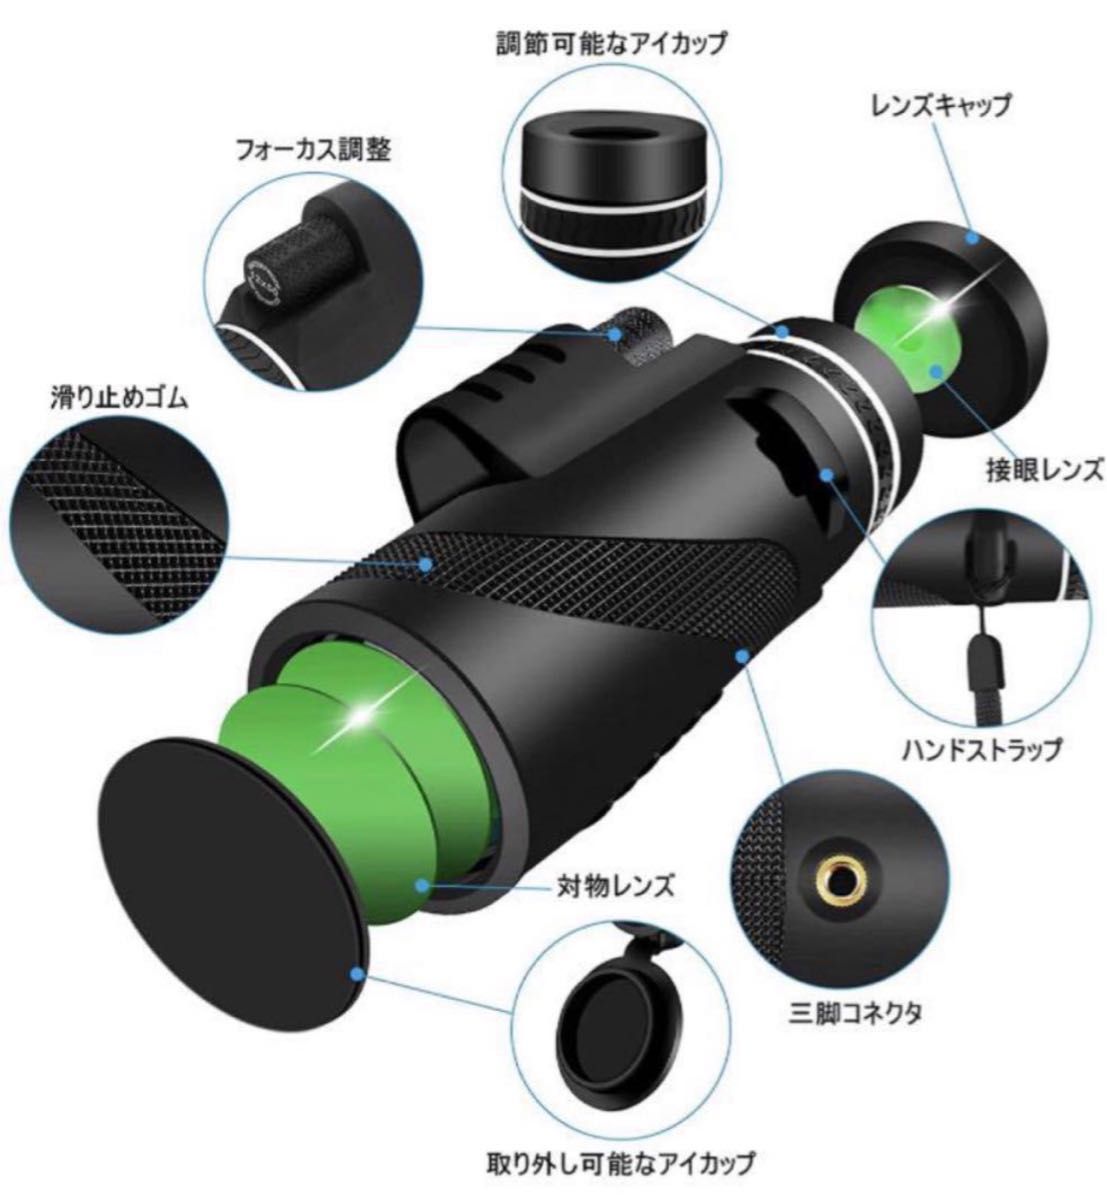 【新品未使用品】単眼鏡 望遠鏡 スマホ用カメラレンズ 12倍 50口径 広角